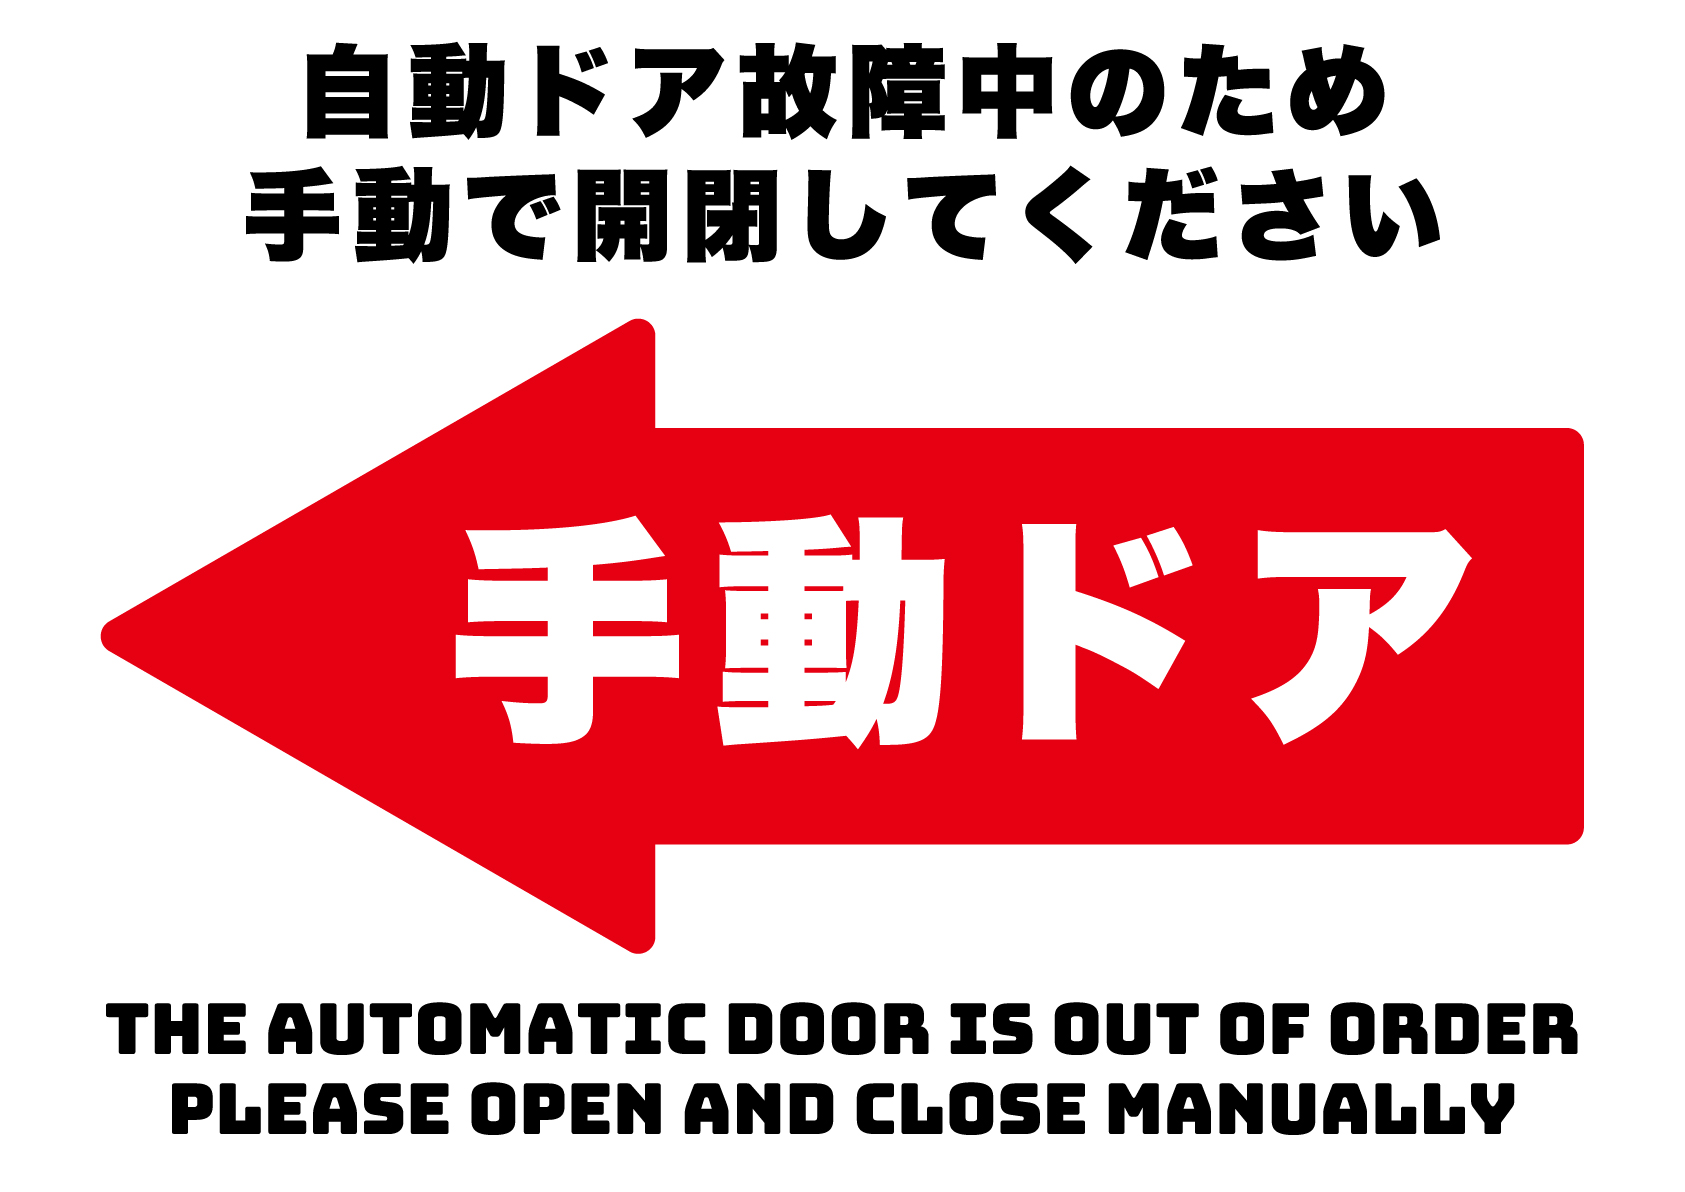 自動ドア故障中、手動で開閉してください（左）の張り紙